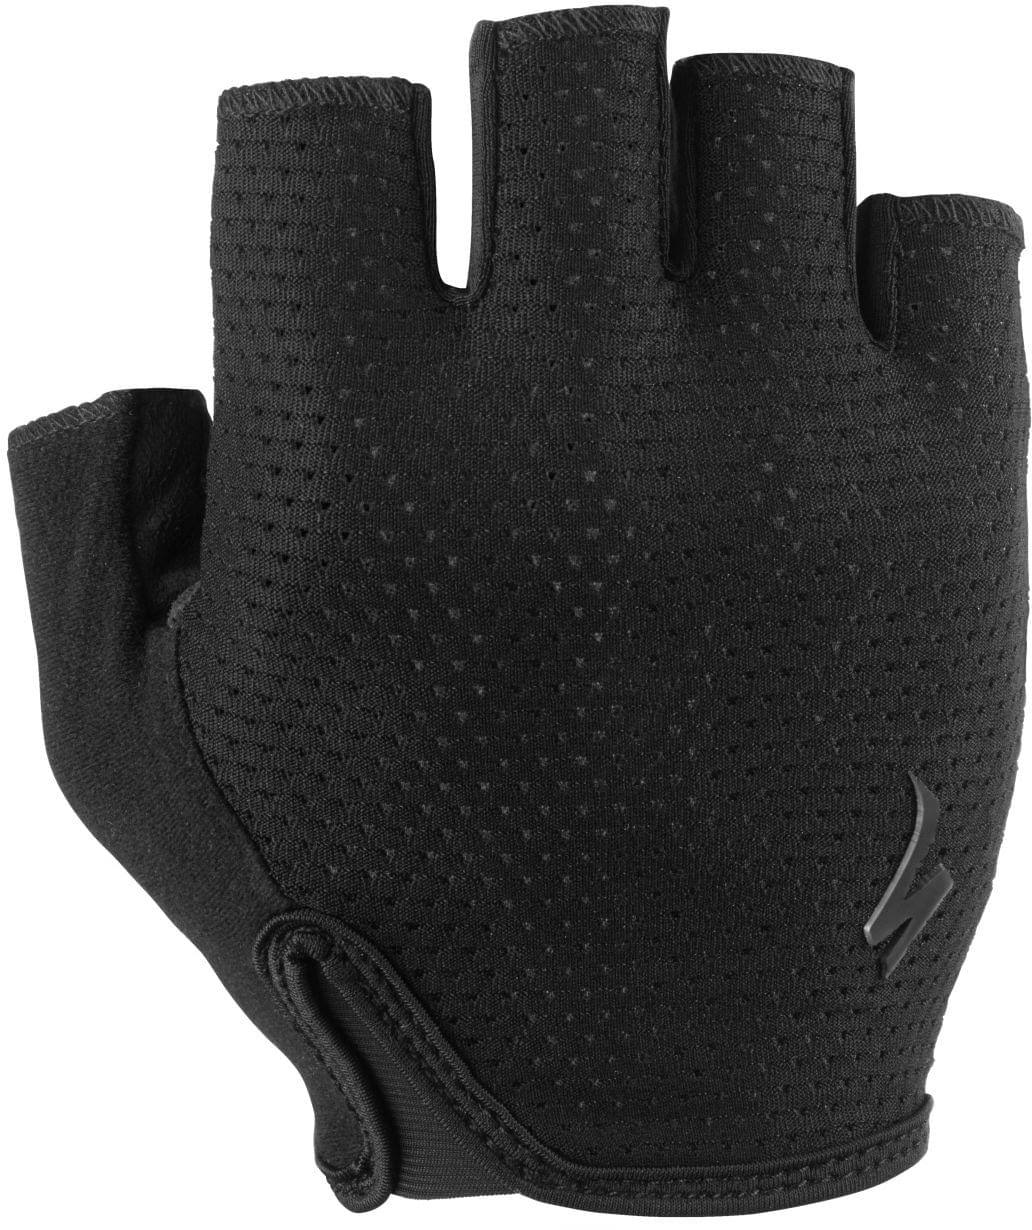 Specialized BG Grail Gloves - Black - Large